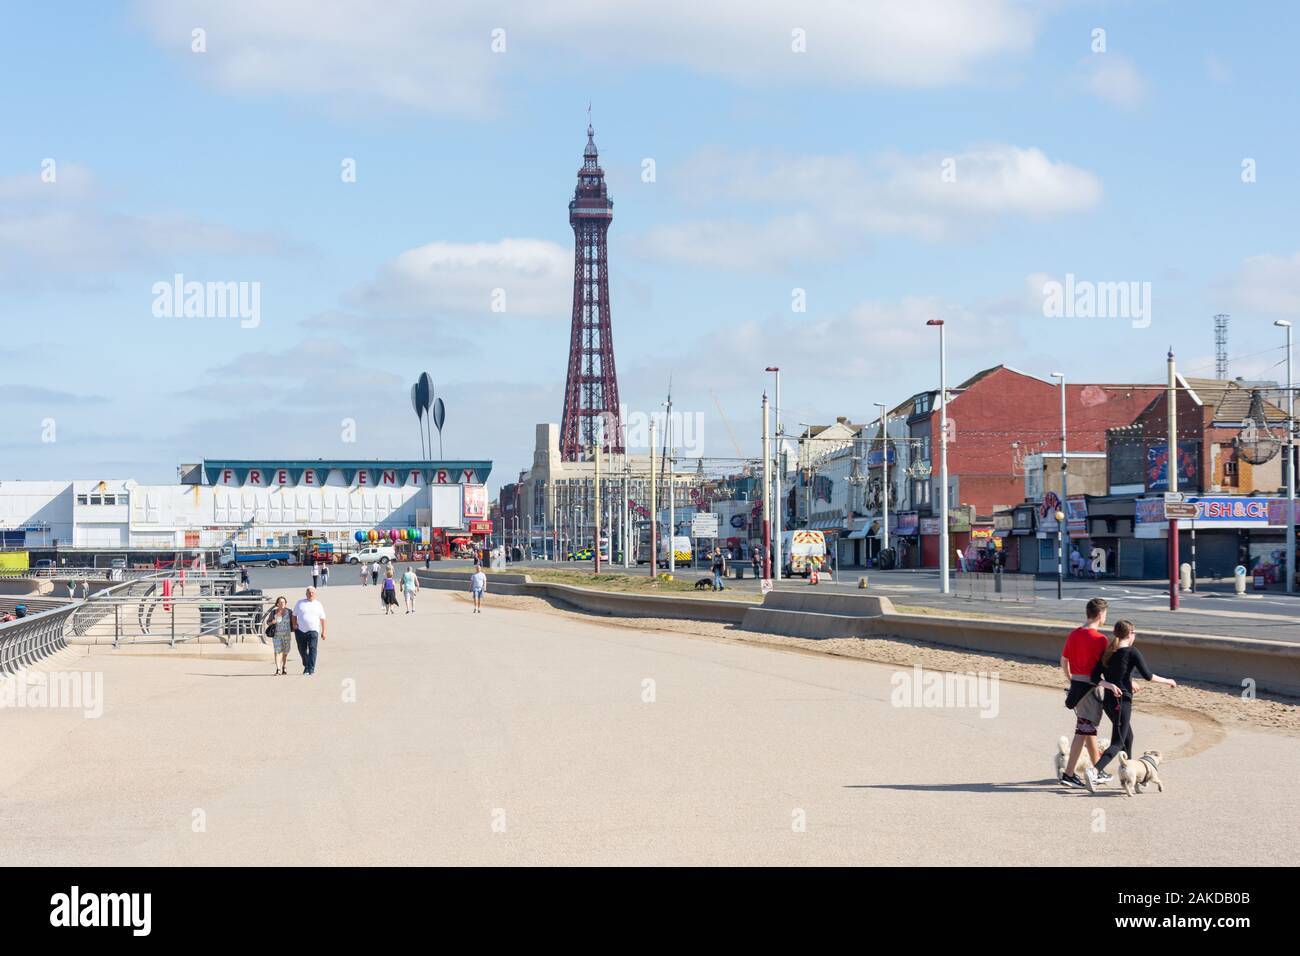 Die Strandpromenade mit dem Blackpool Tower und Ocean Boulevard, Blackpool, Lancashire, England, Vereinigtes Königreich Stockfoto